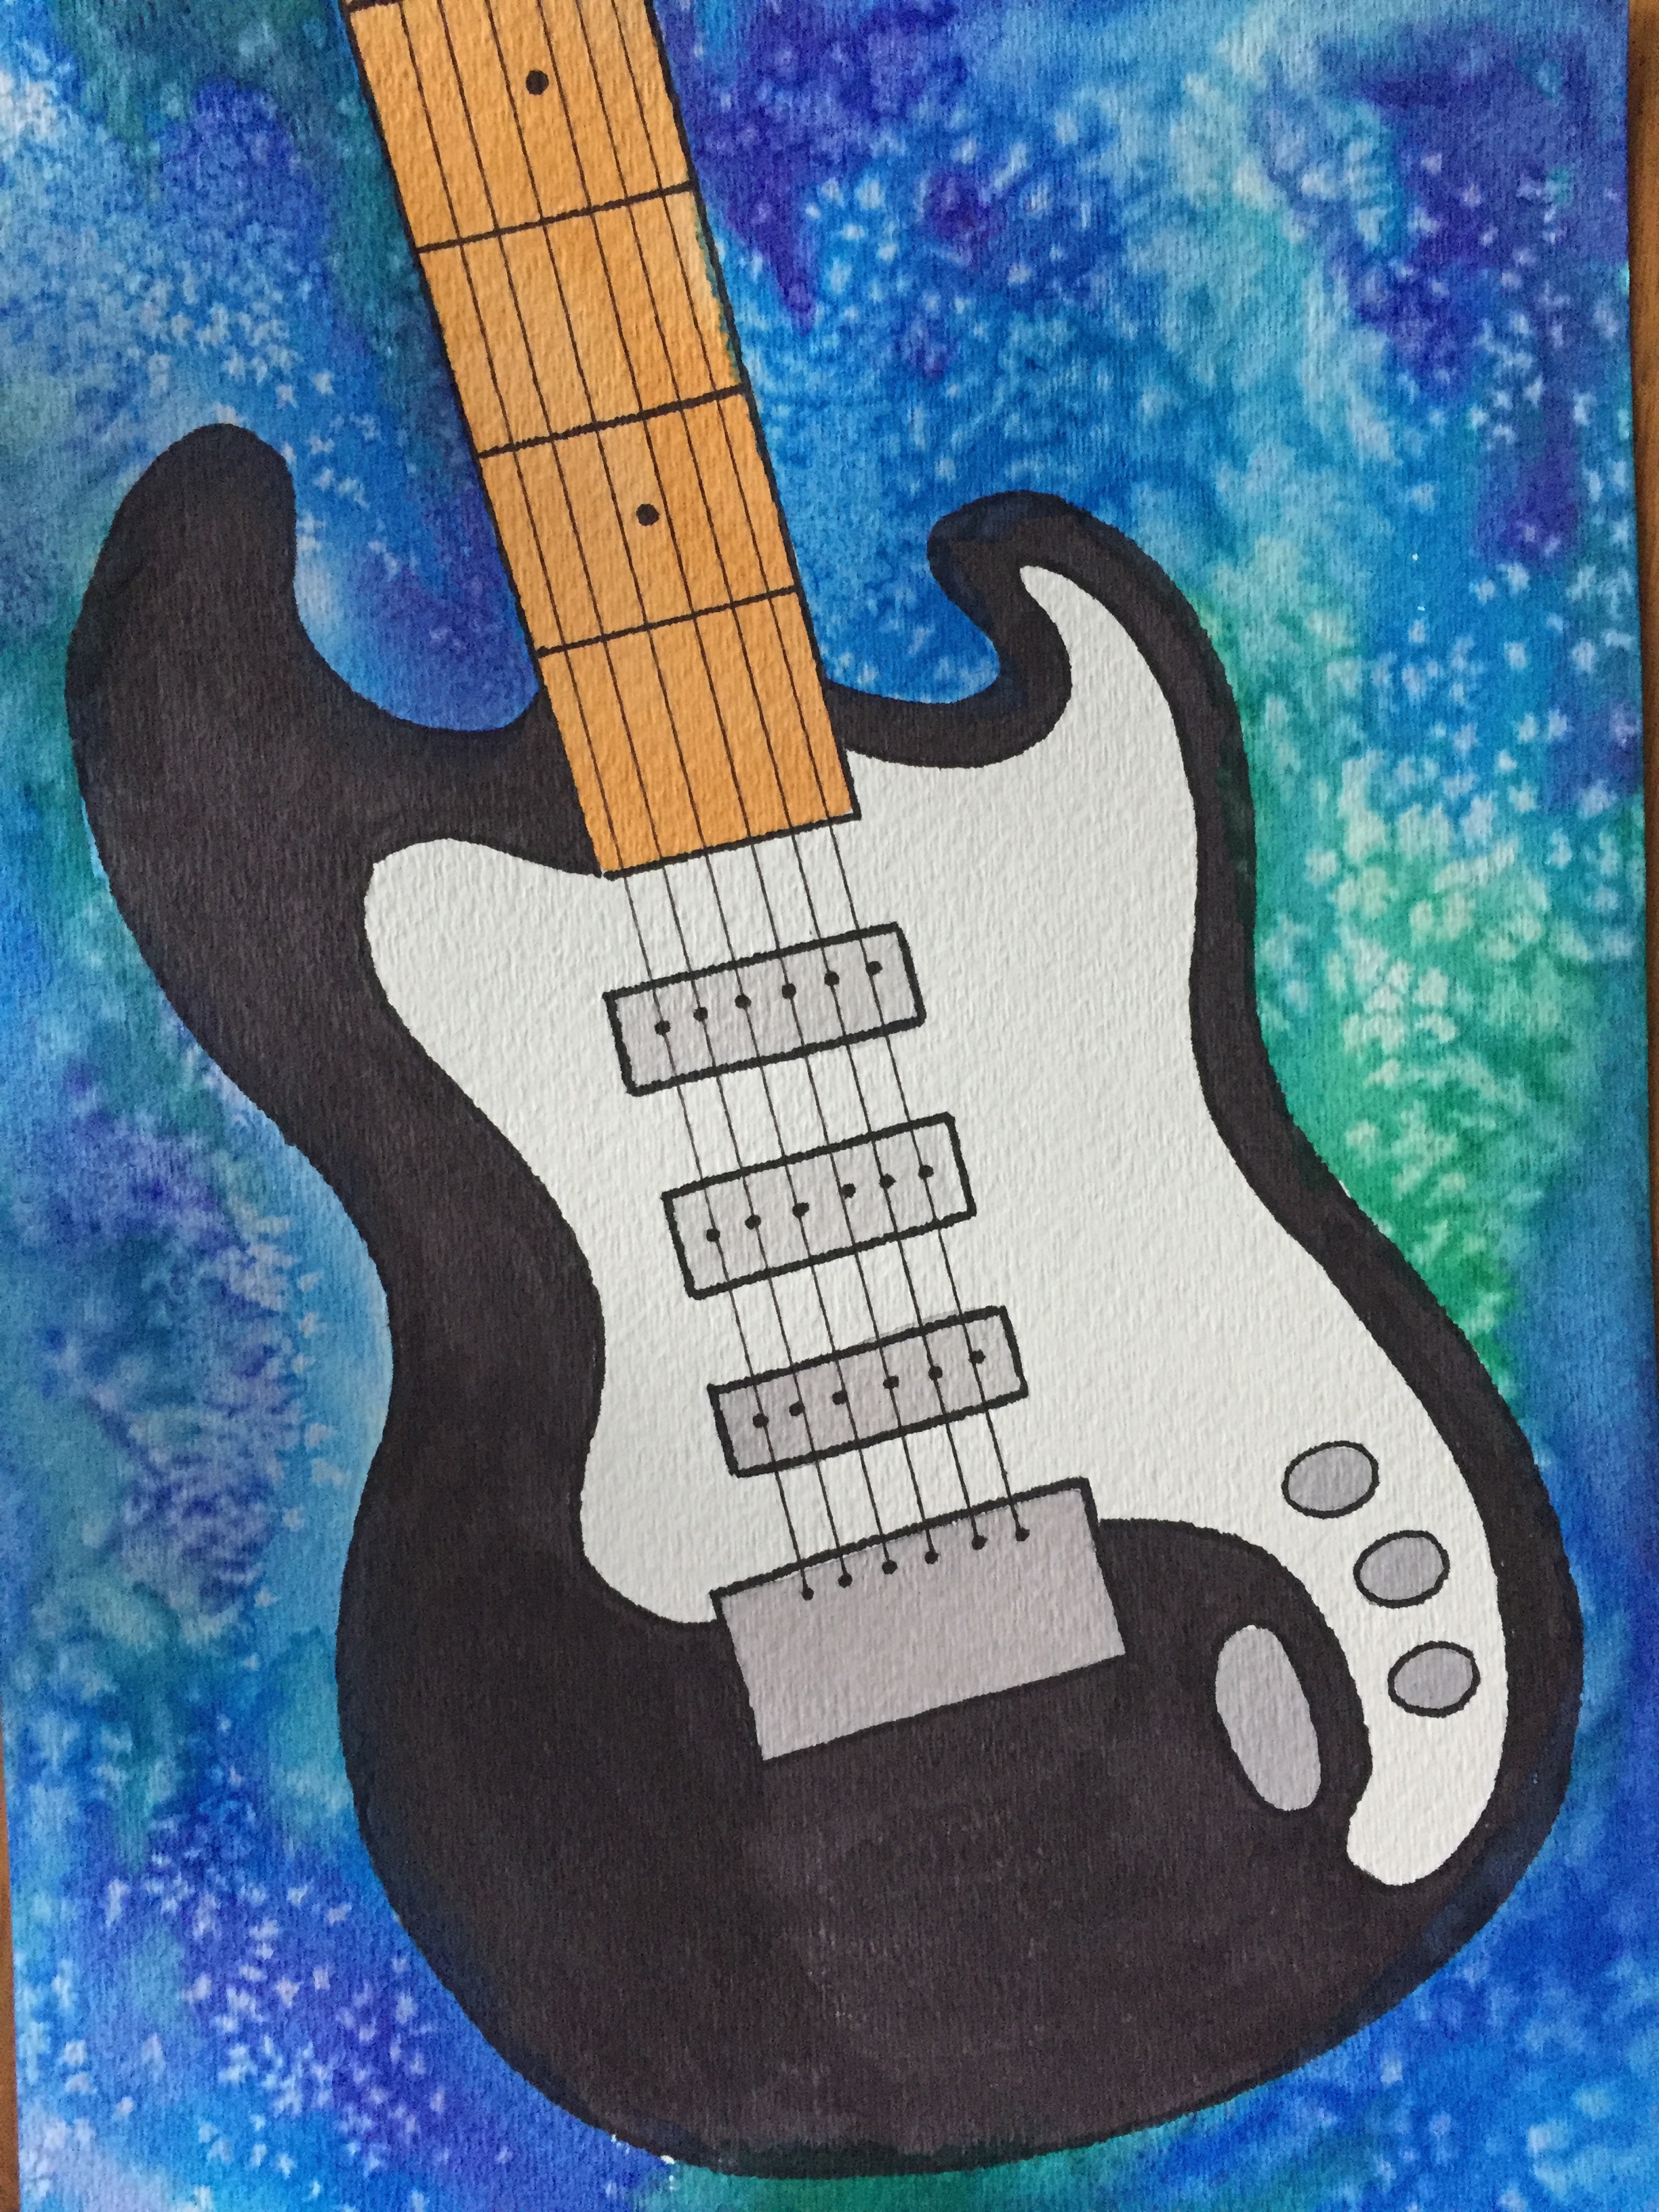 watercolor guitar.JPG